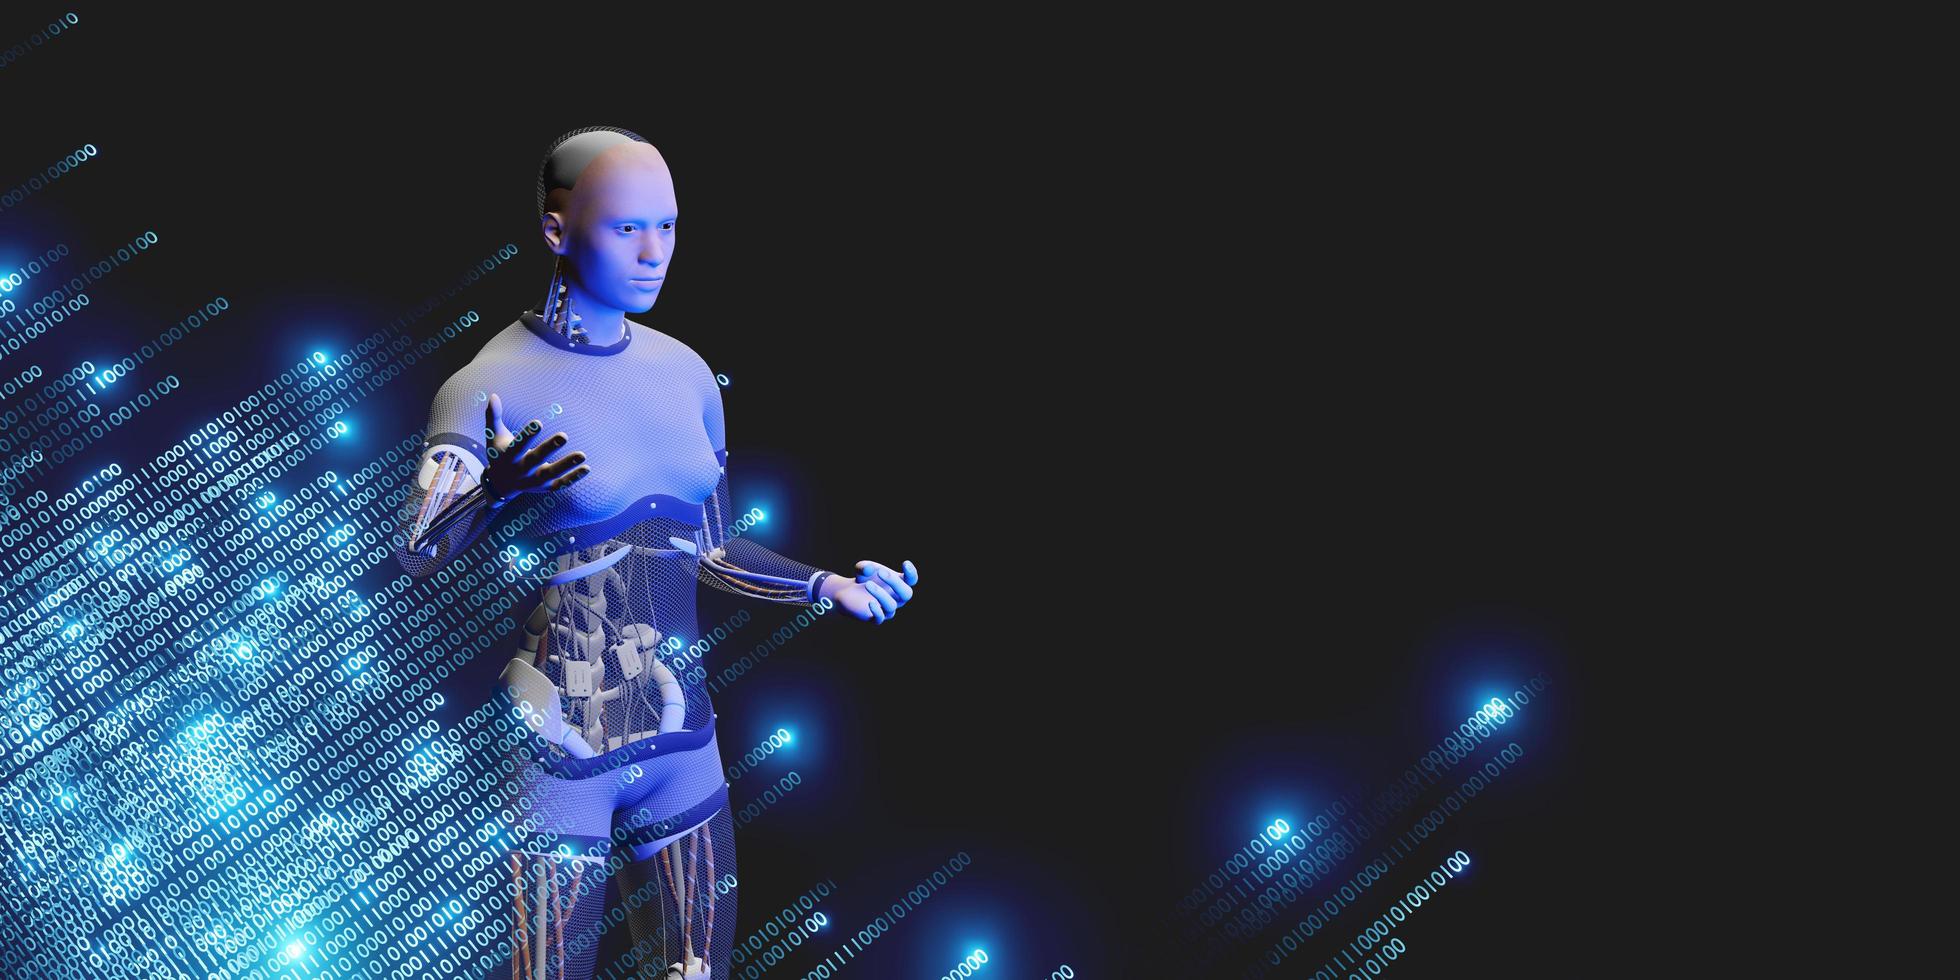 humanoida robotar och binär kod ai stordataanalys och artificiell intelligenskoncept 3d-illustrationer foto